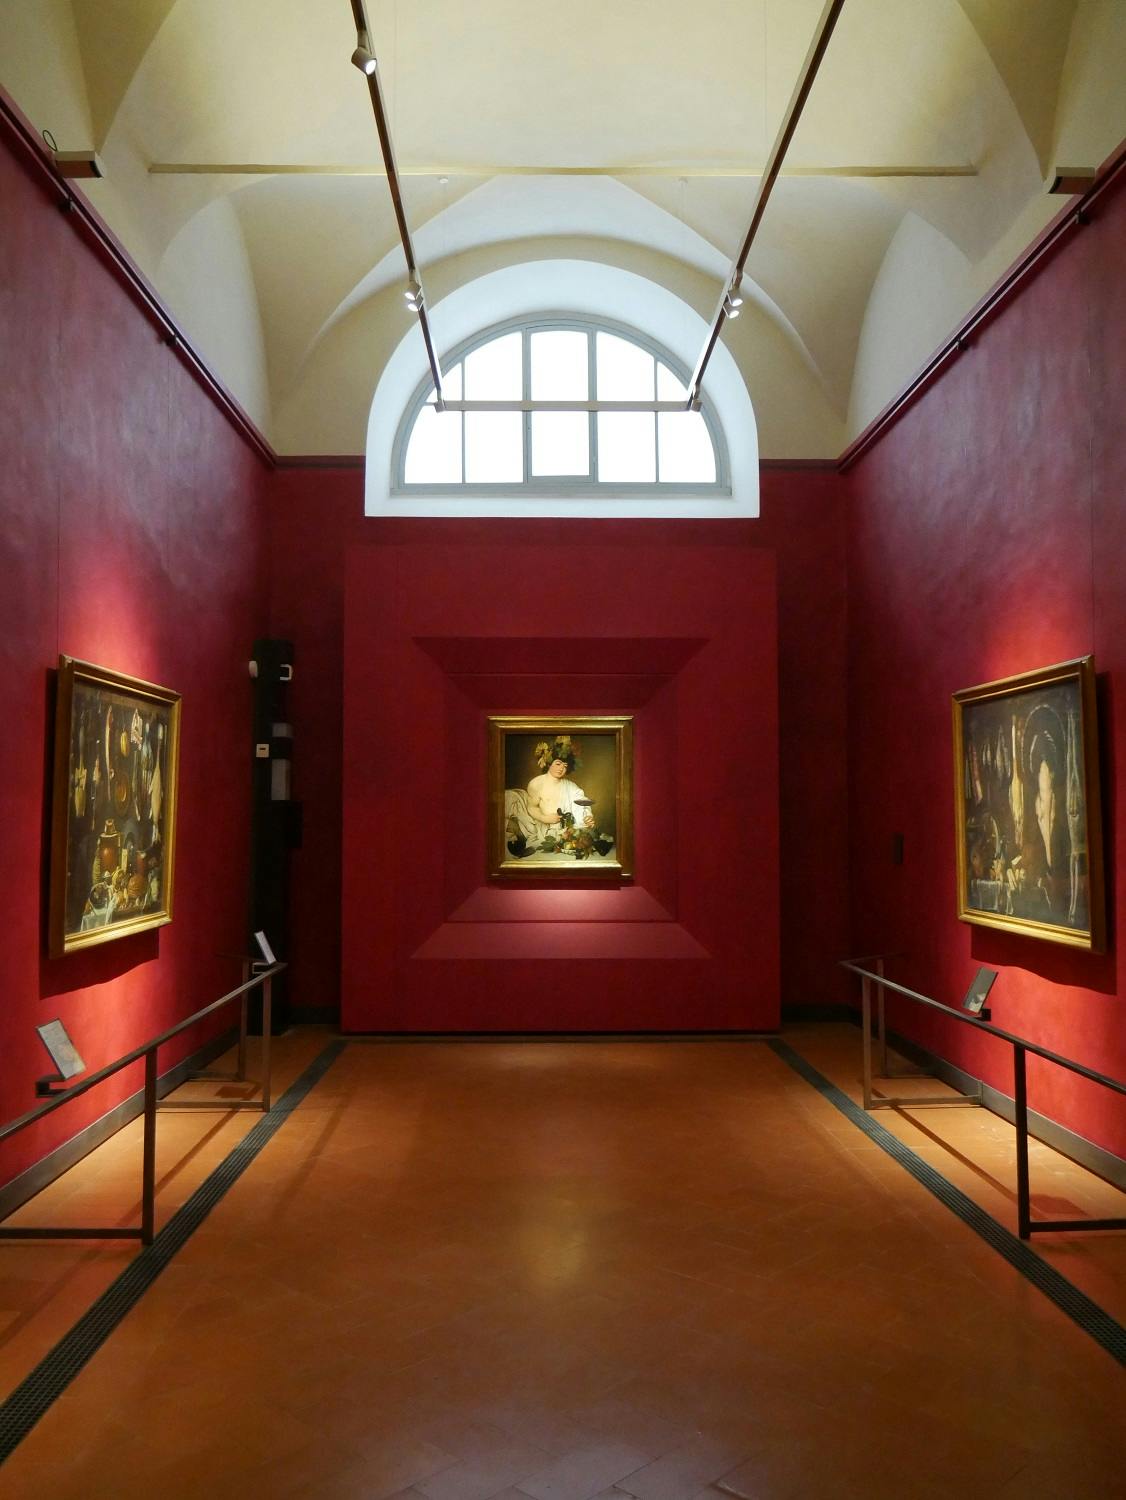 Caravaggio and the 17th century